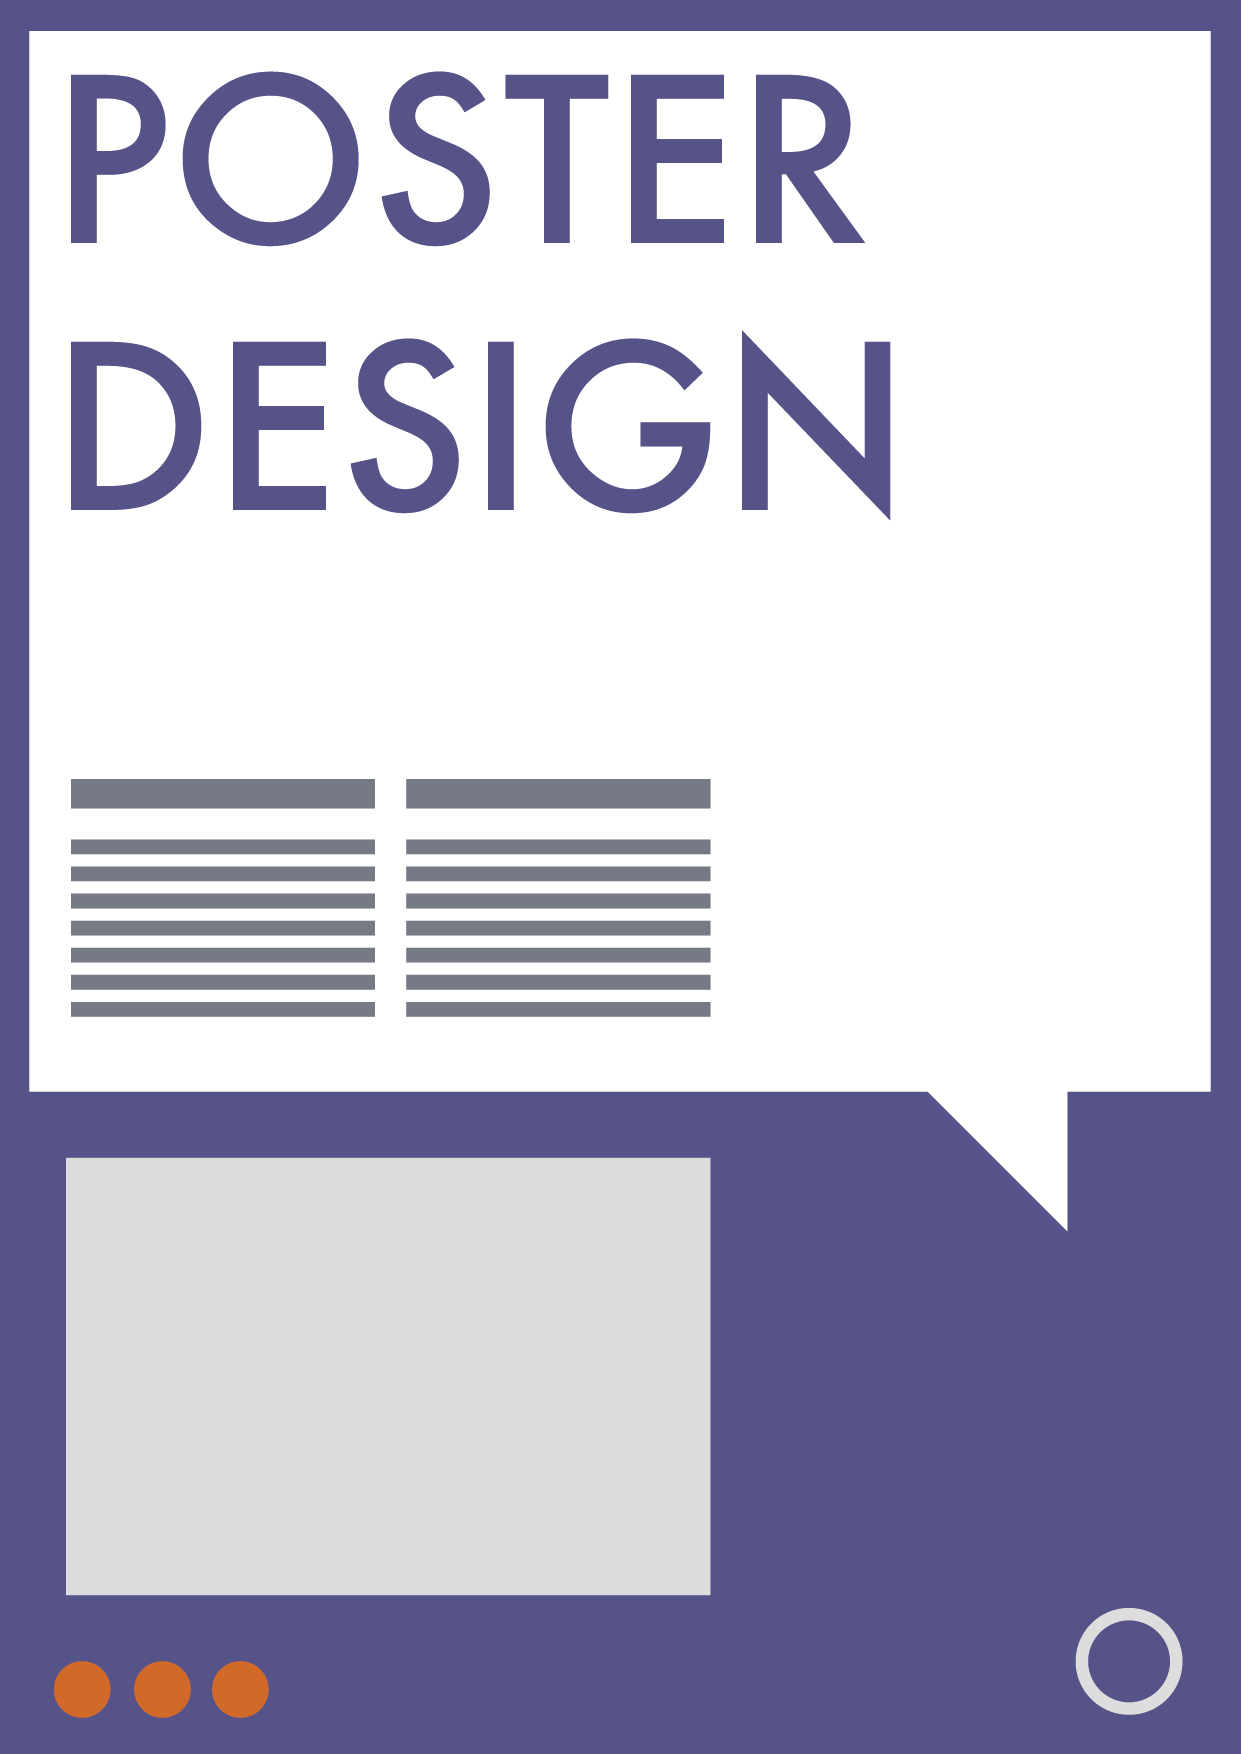 Poster design Beispiel, Din Format mit verschiedenen abstrakten Elementen, grau, lila, orange